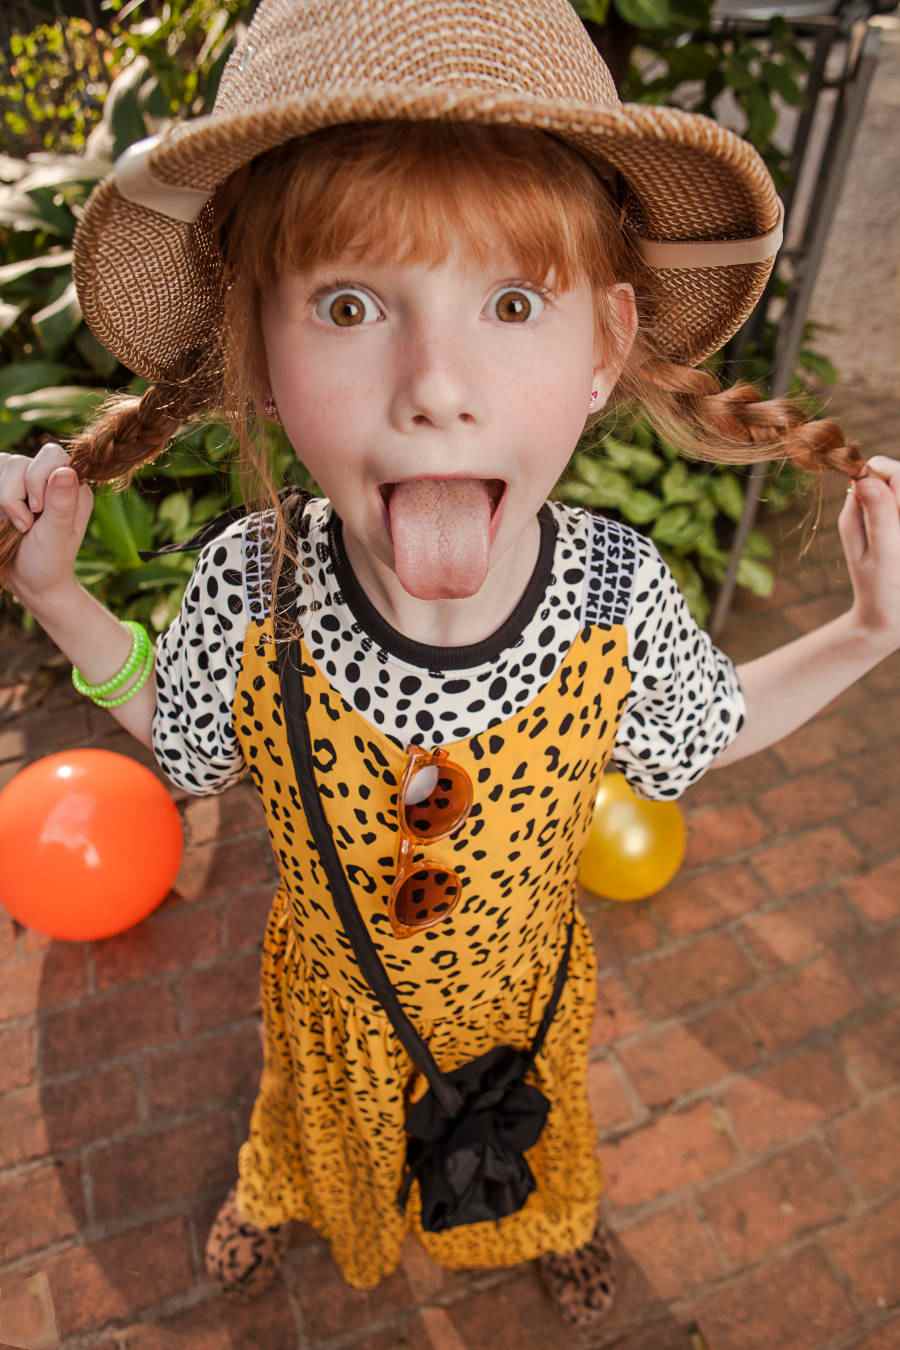 Criança com cabelo com duas tranças e franjas, com a língua para fora e roupa com um mix de estampas animal print e bolsa preta da nova coleção da Sato Kid